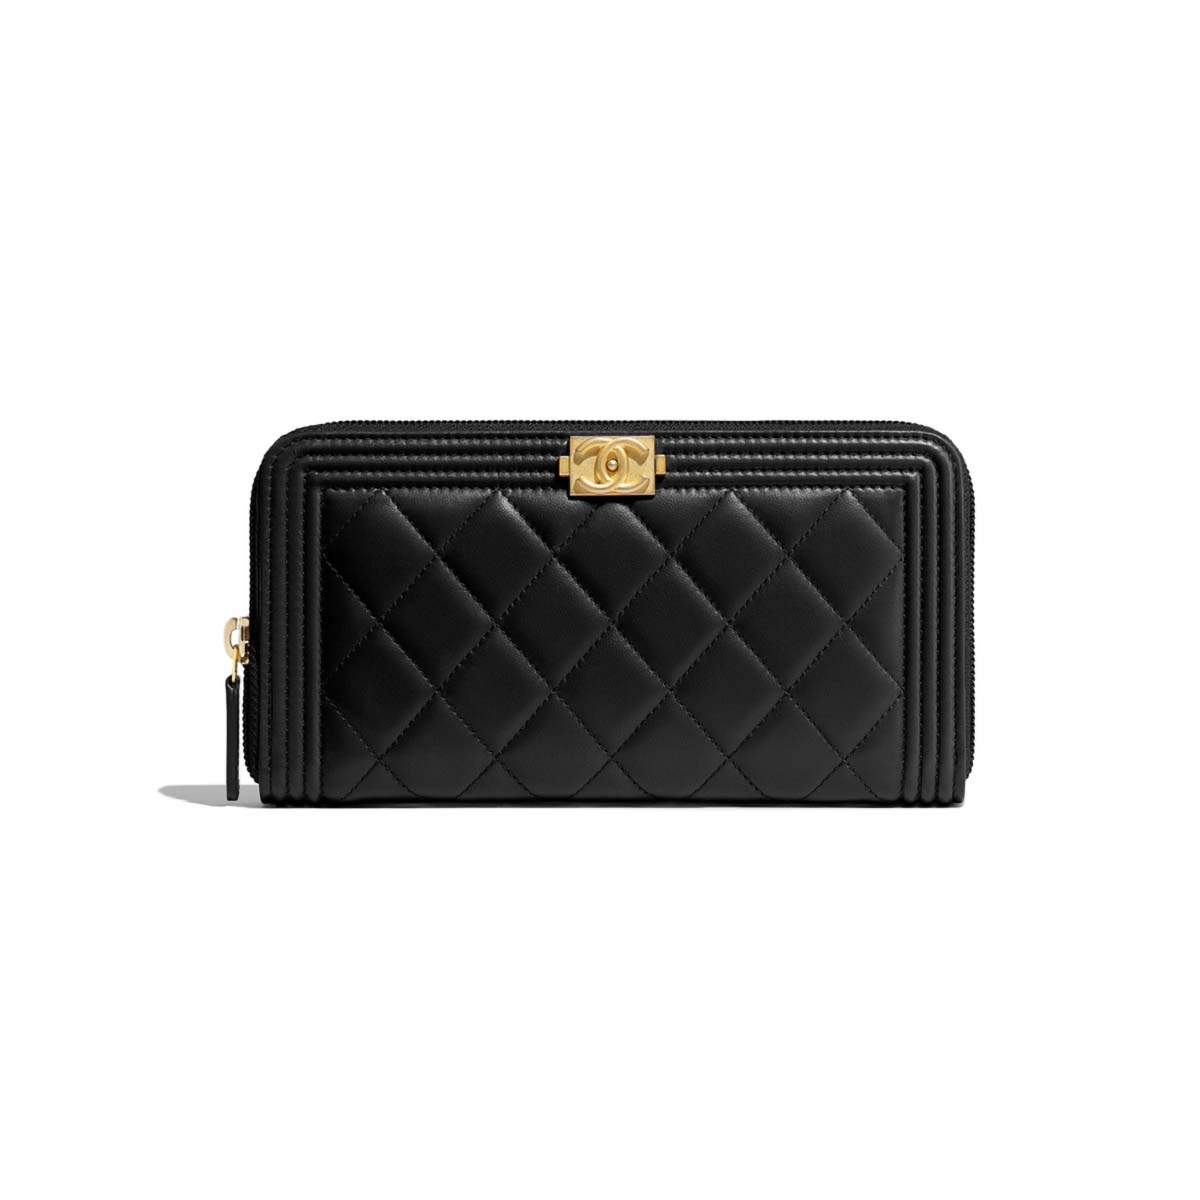 Chanel Boy Chanel Zipped Wallet in Grained Calfskin & Gold-tone